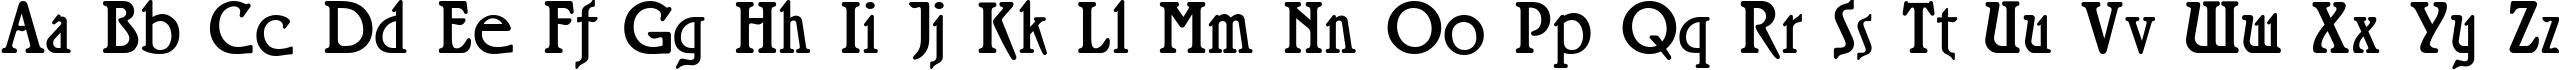 Пример написания английского алфавита шрифтом Rossano Regular